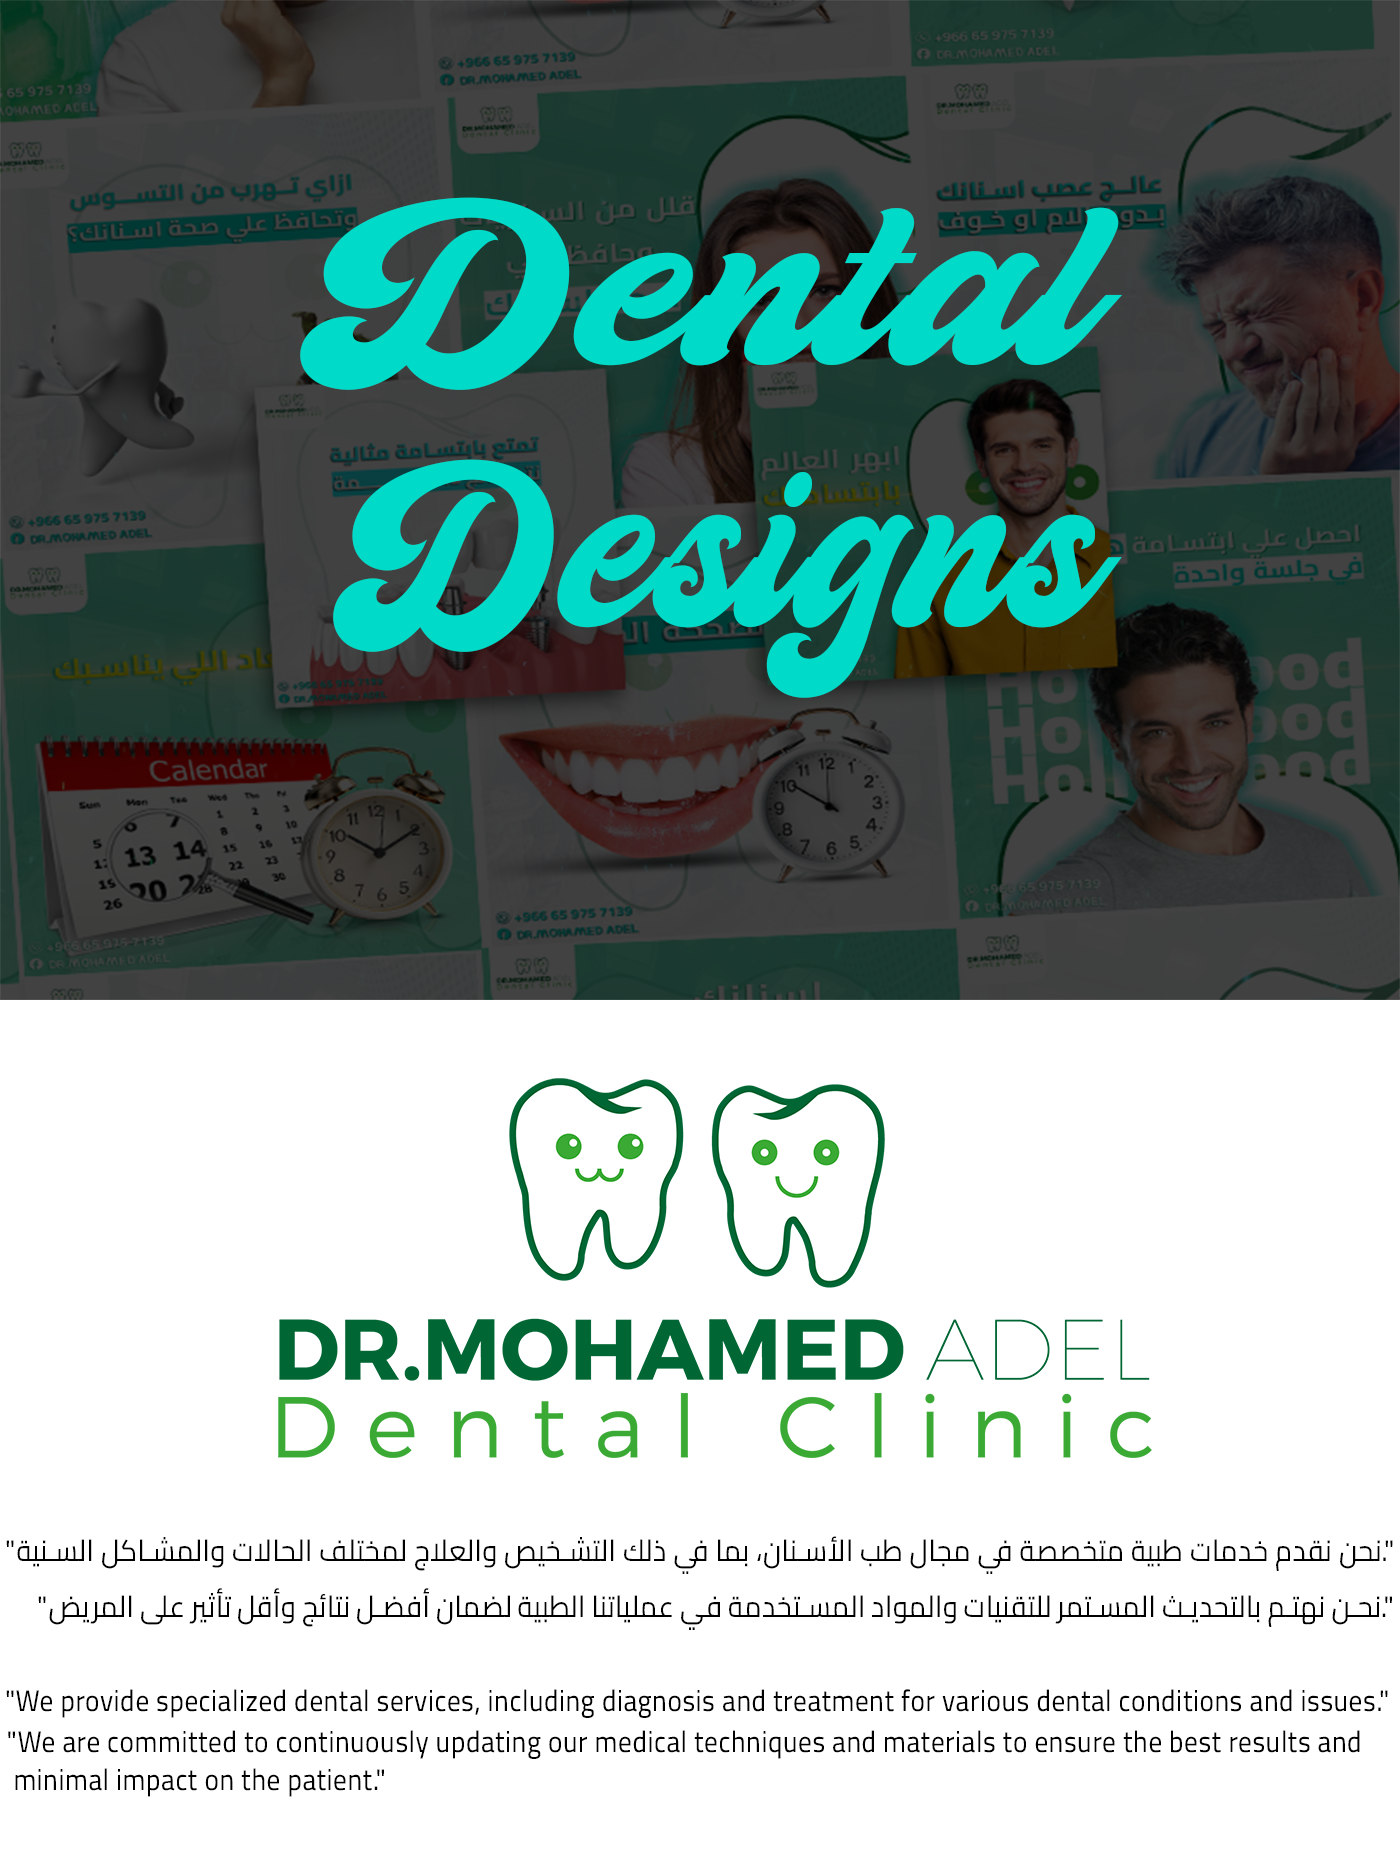 dental dentist dental clinic teeth Social media post Advertising  Graphic Designer modern Social Media Design Social Media ads